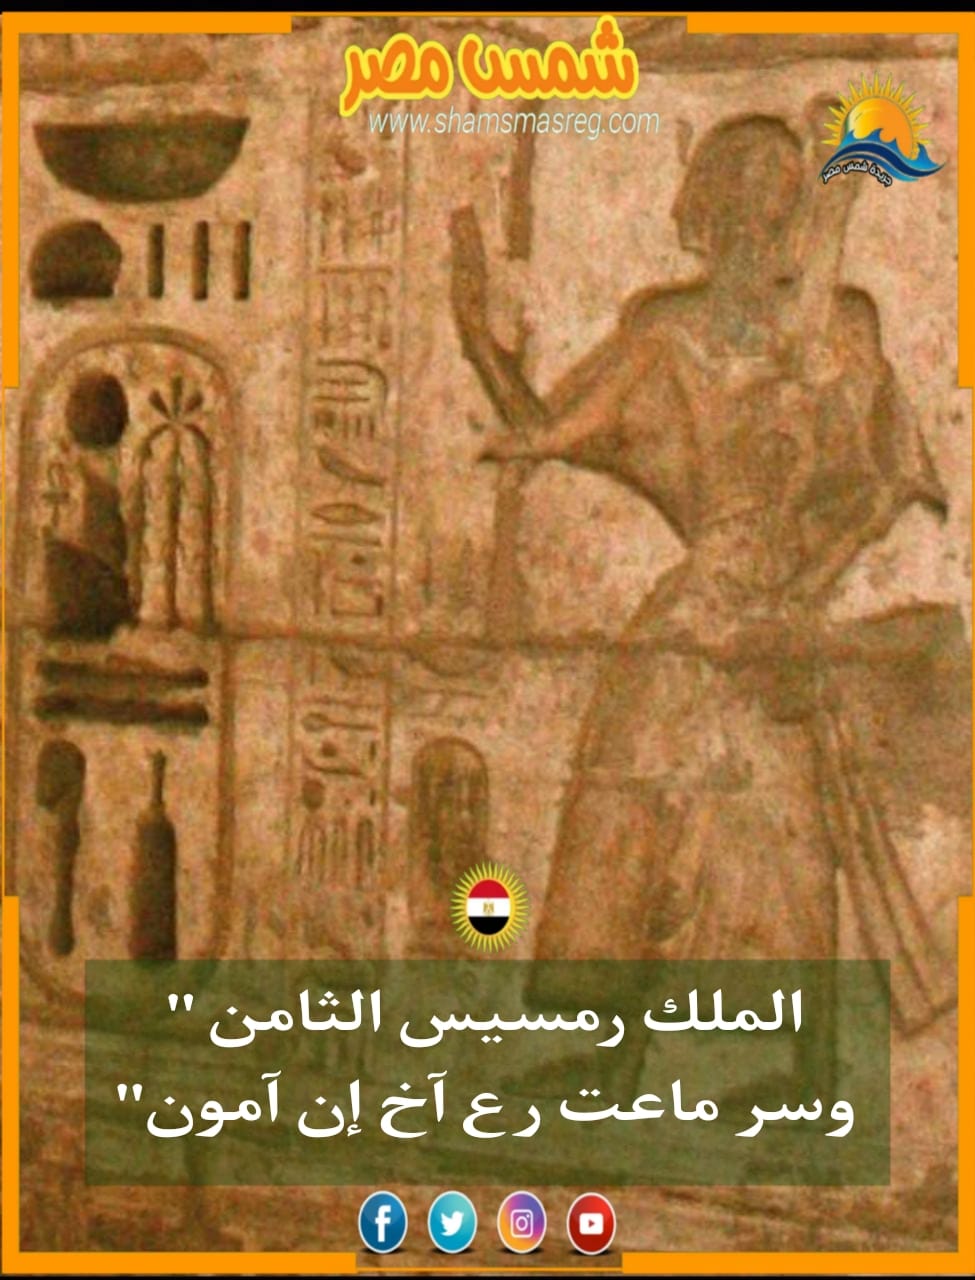 شمس مصر / الملك رمسيس الثامن " وسر ماعت رع آخ إن آمون" 